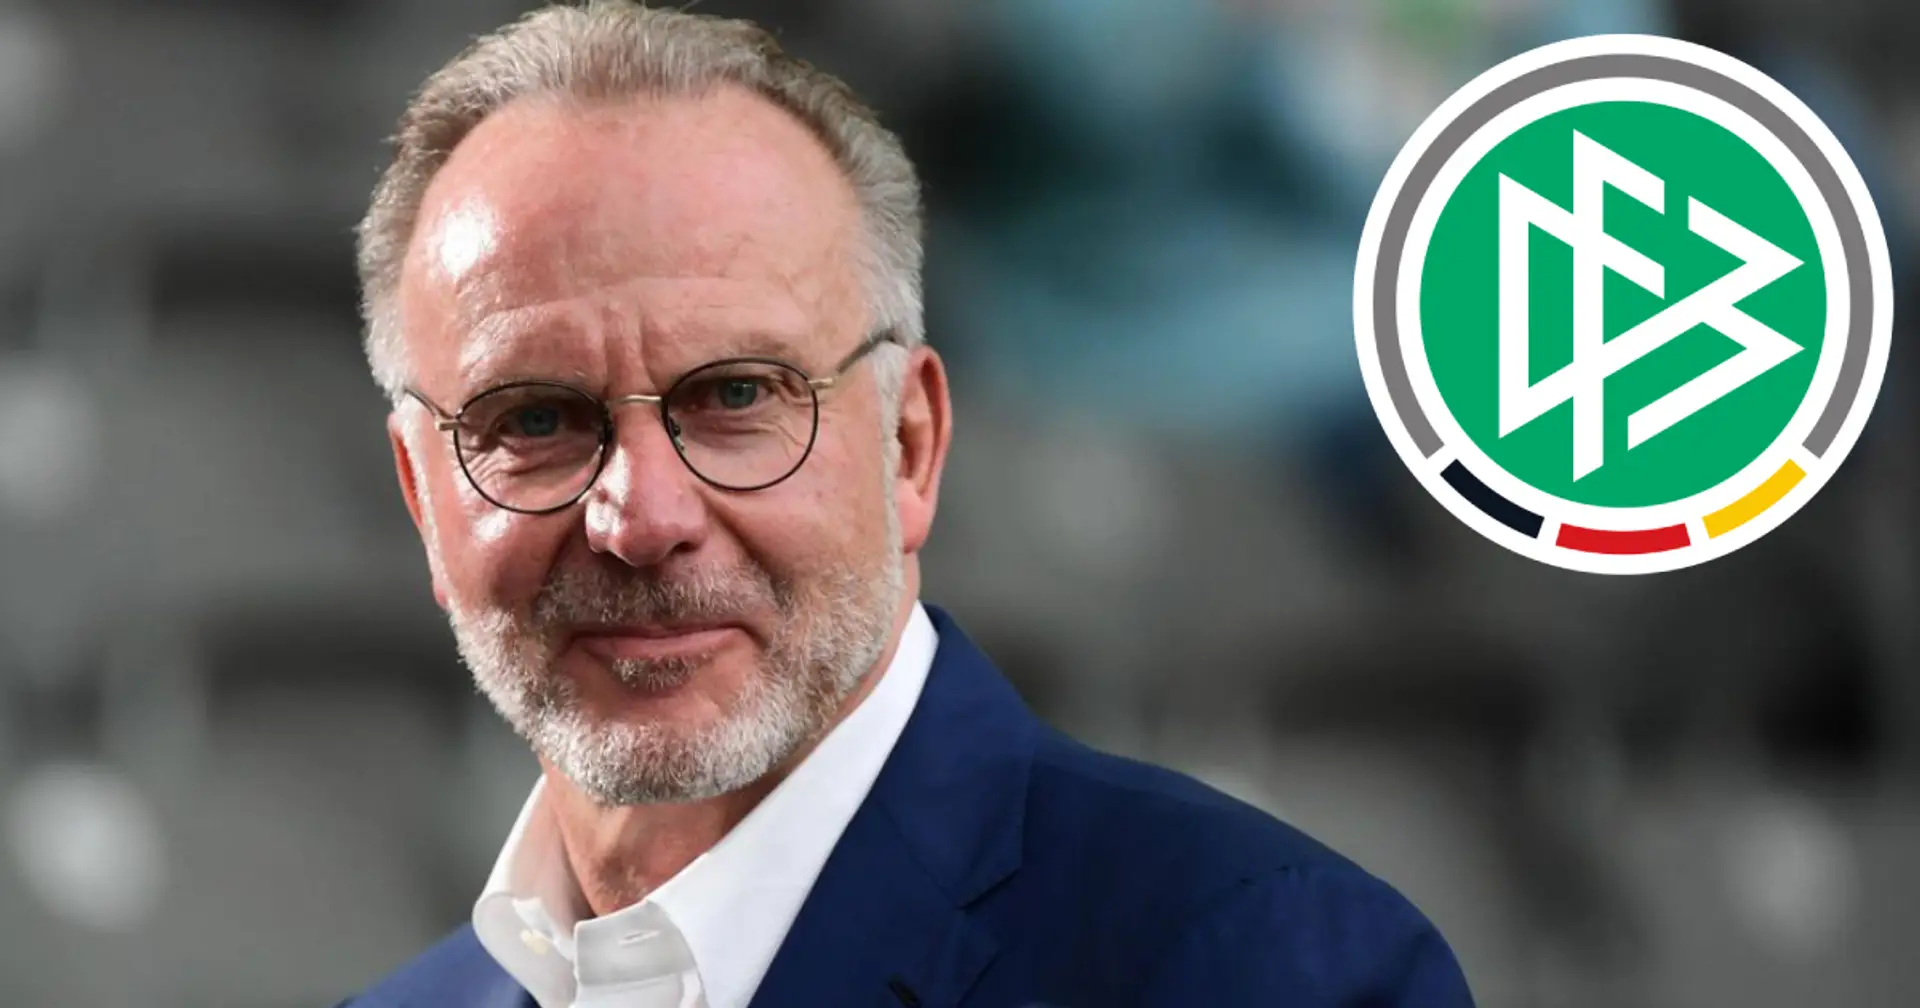 Bericht: Karl-Heinz Rummenigge könnte wohl eine Rolle beim DFB-Neuaufbau spielen